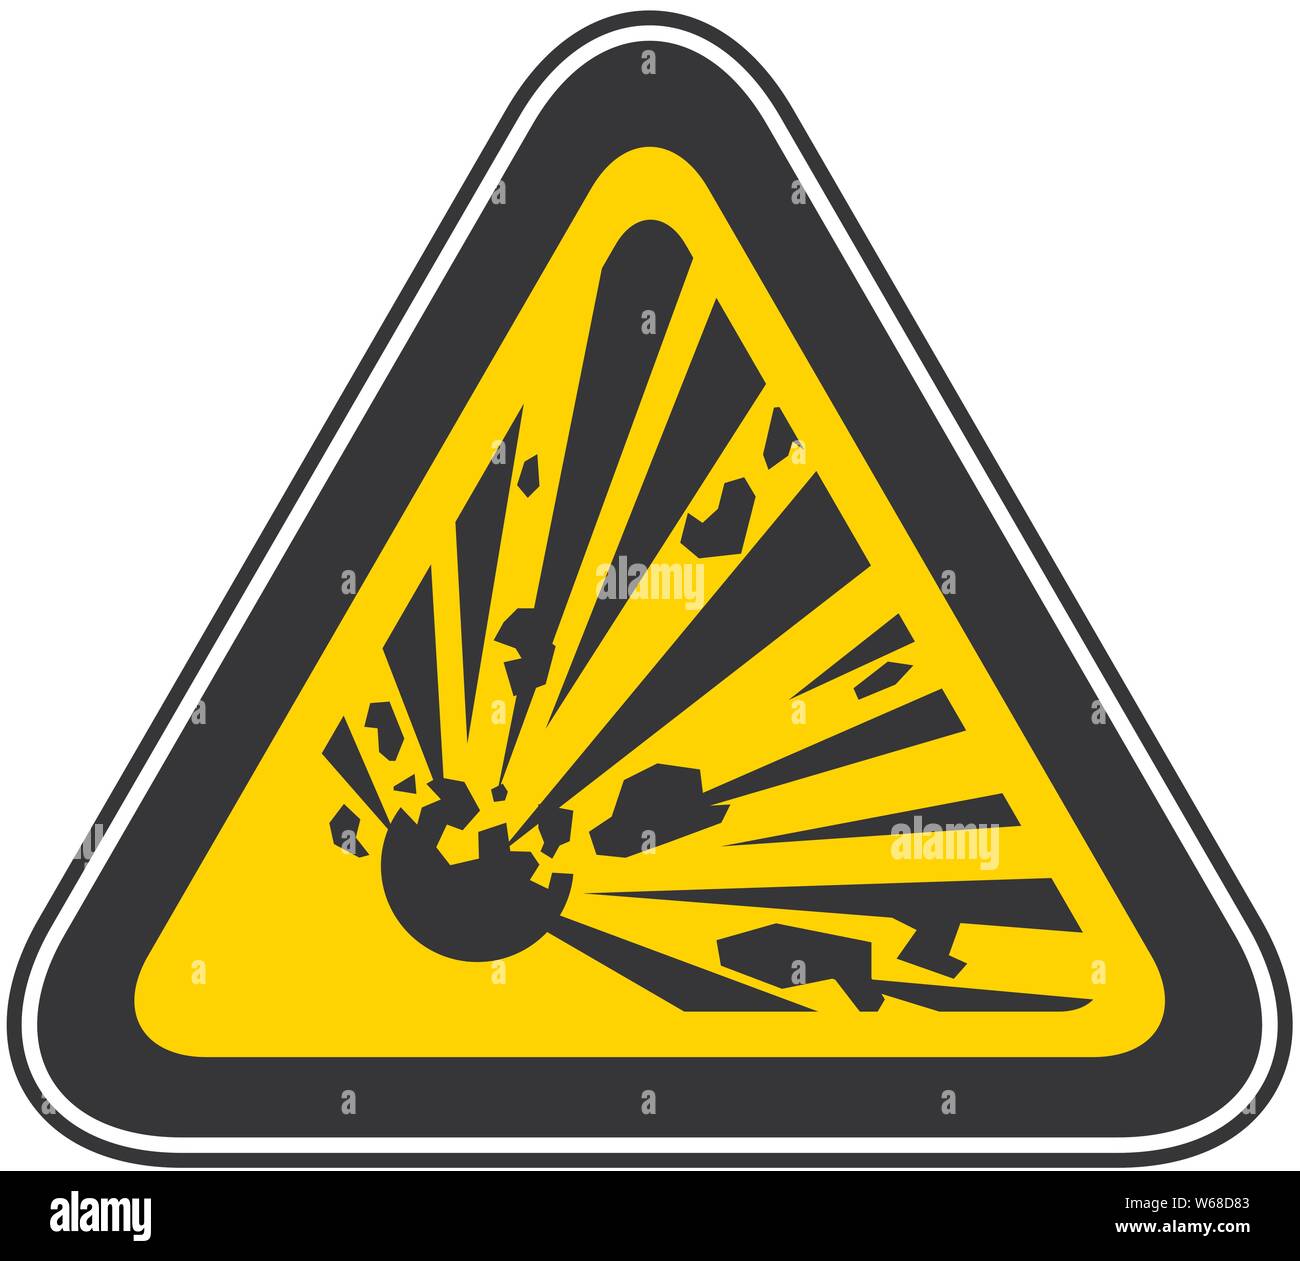 Triangular yellow Warning Hazard Symbol, vector illustration Stock Vector